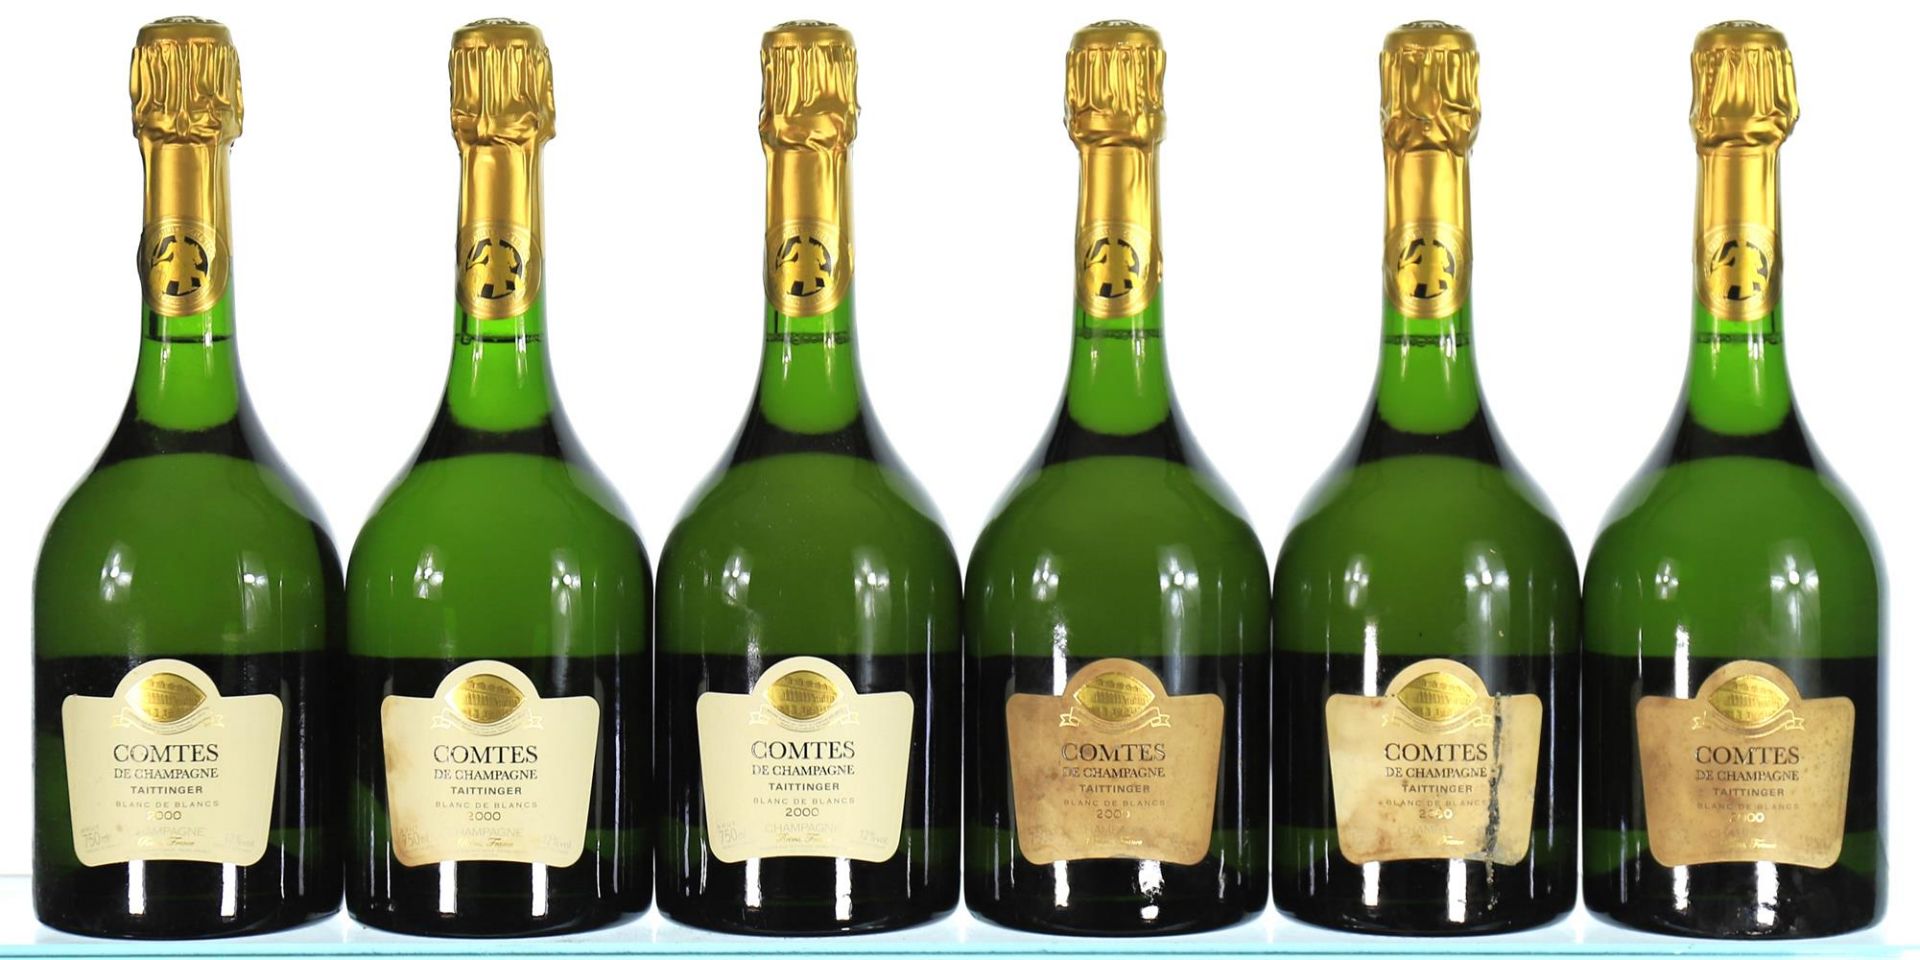 2000 Taittinger, Comtes de Champagne Blanc de Blancs